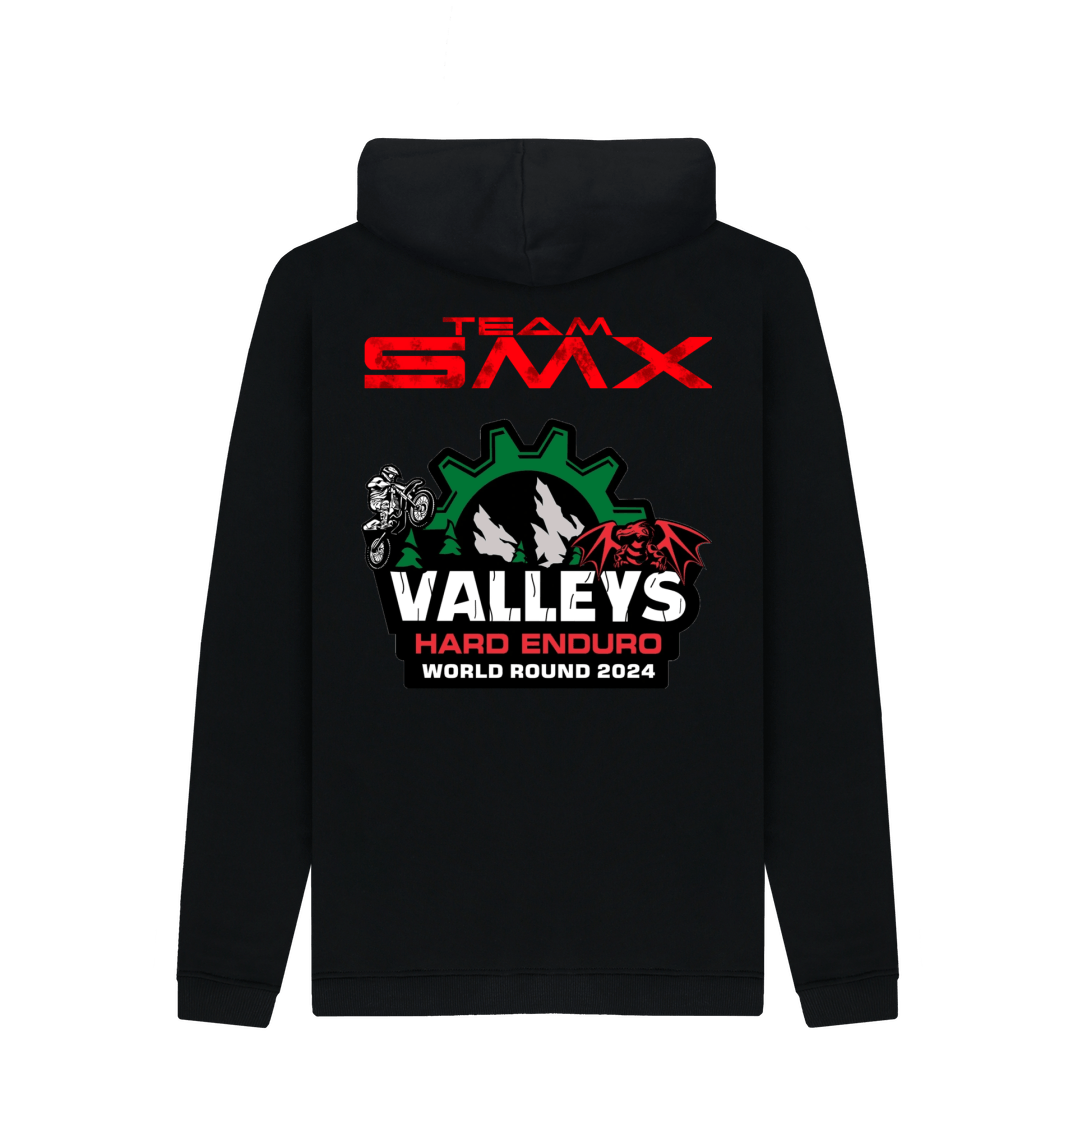 SMX Valleys Hoodie (Mens)